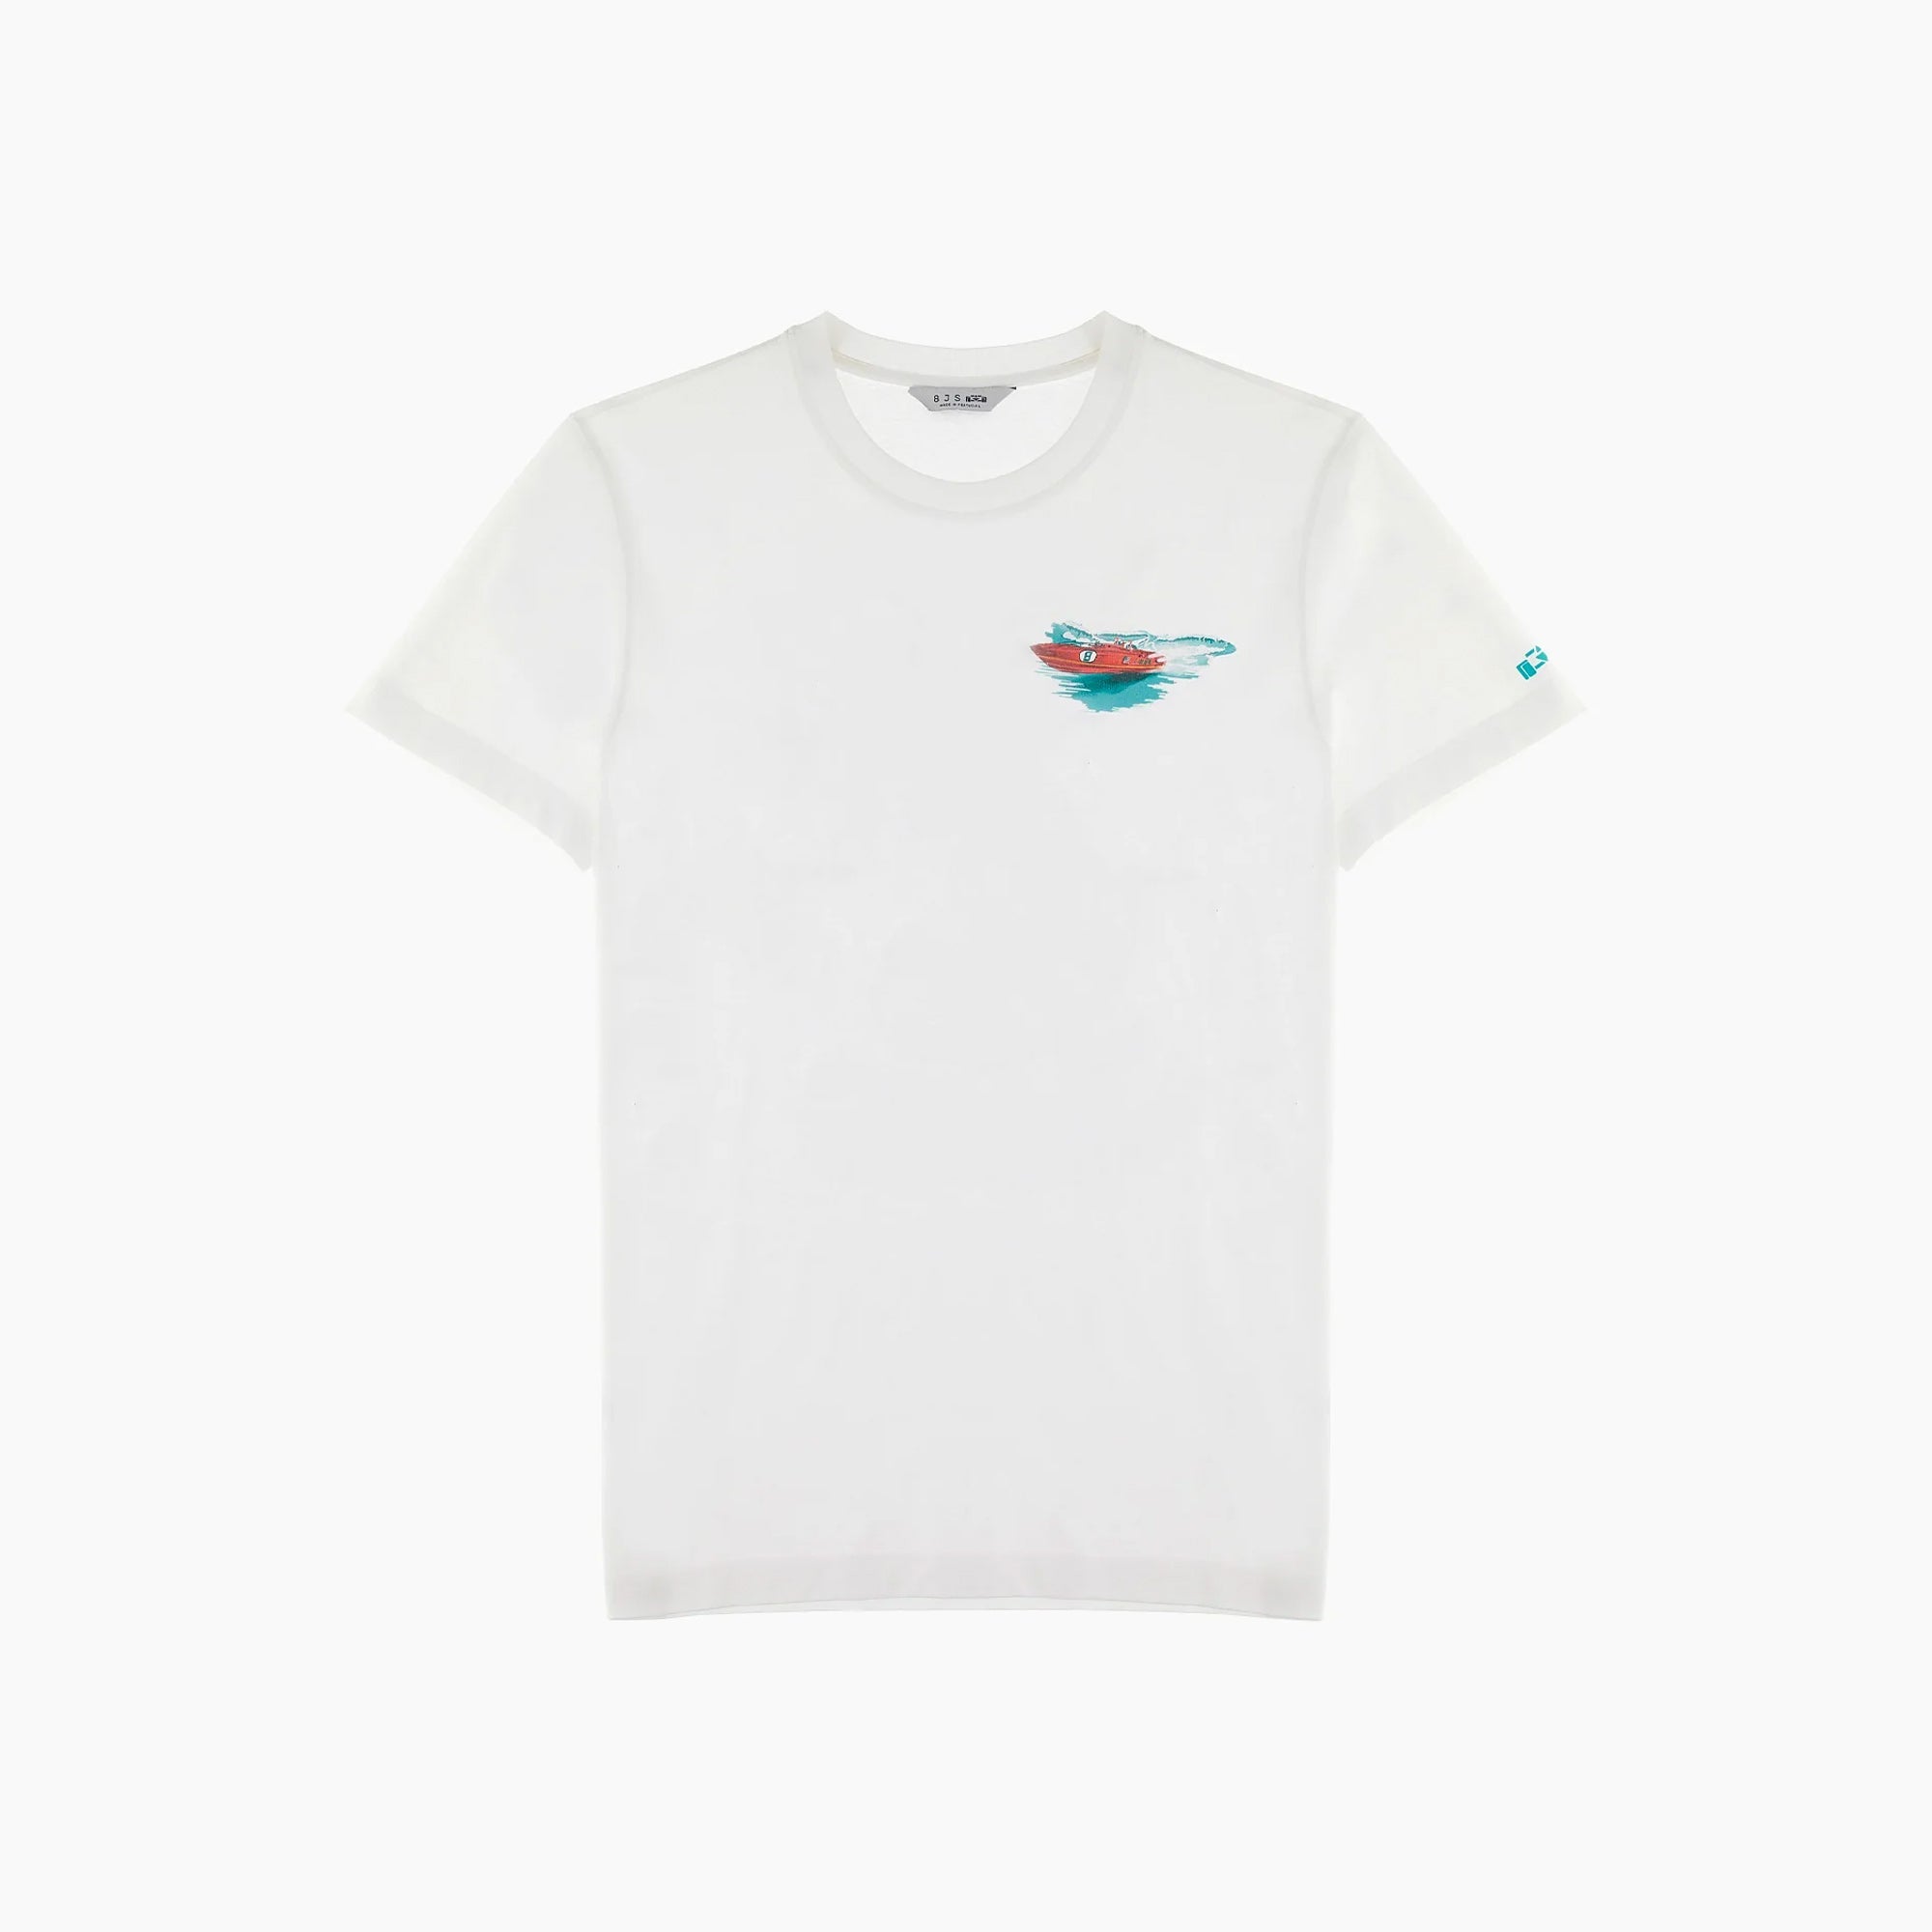 8JS | Island Adventure T-Shirt-T-Shirt-8JS-gpx-store